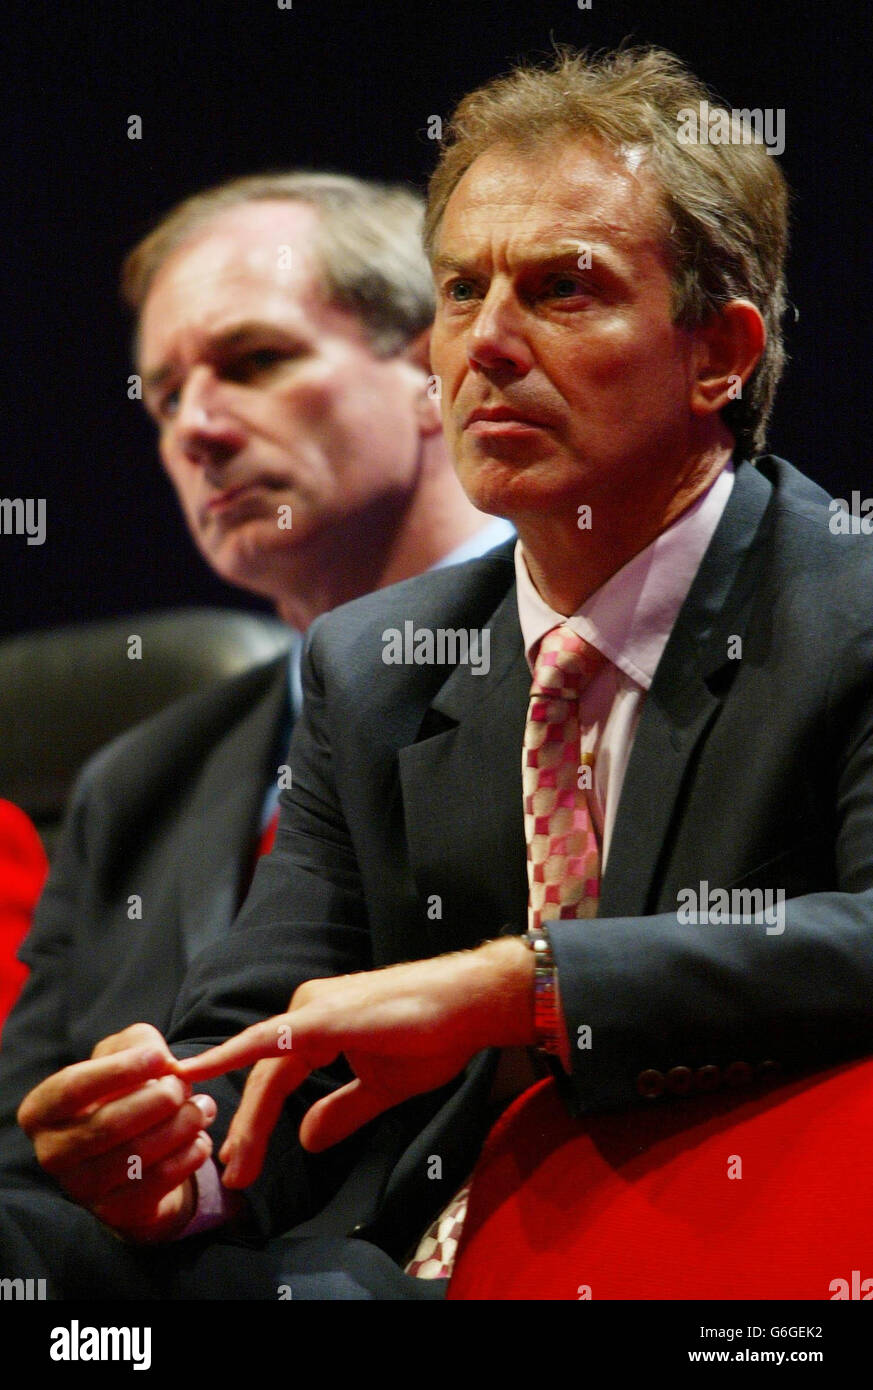 Il Segretario alla Difesa Geoff Hoon (sinistra) e il primo Ministro britannico Tony Blair ascoltano il Segretario agli Esteri Jack Straw discorso alla Conferenza del Partito laburista a Bournemouth durante il dibattito mondiale sulla Gran Bretagna. Foto Stock